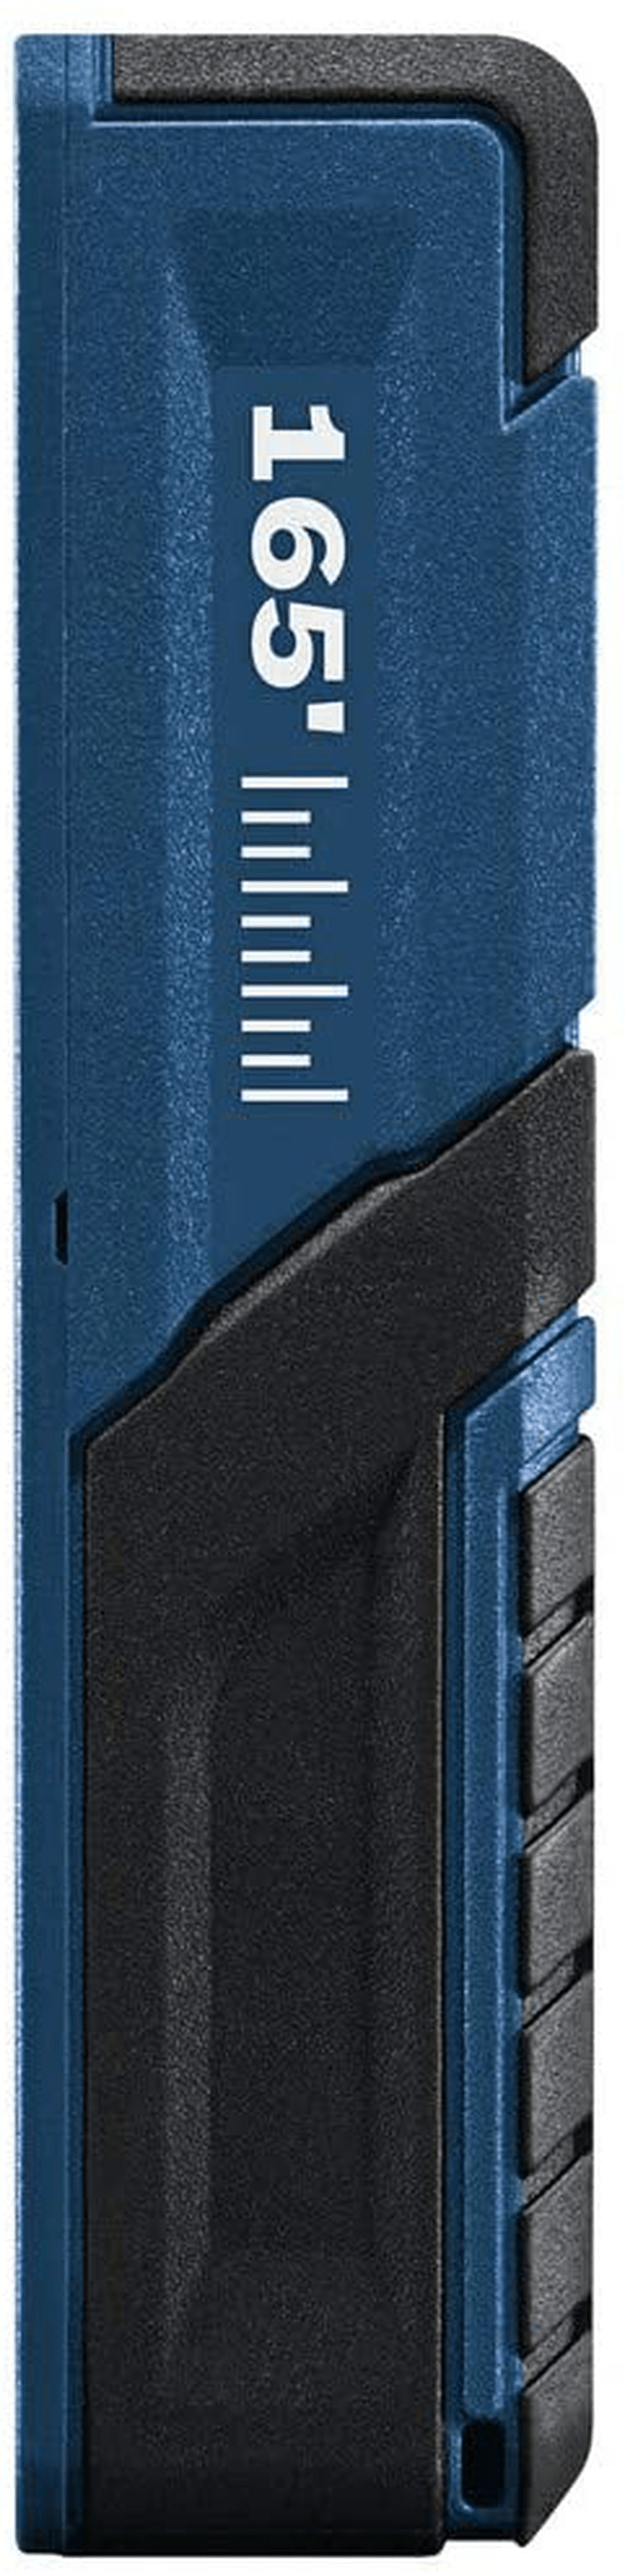 Bosch Blaze Pro GLM165-40 165ft Laser Distance Measure with Color Backlit Display Hardware > Tools > Measuring Tools & Sensors BOSCH   